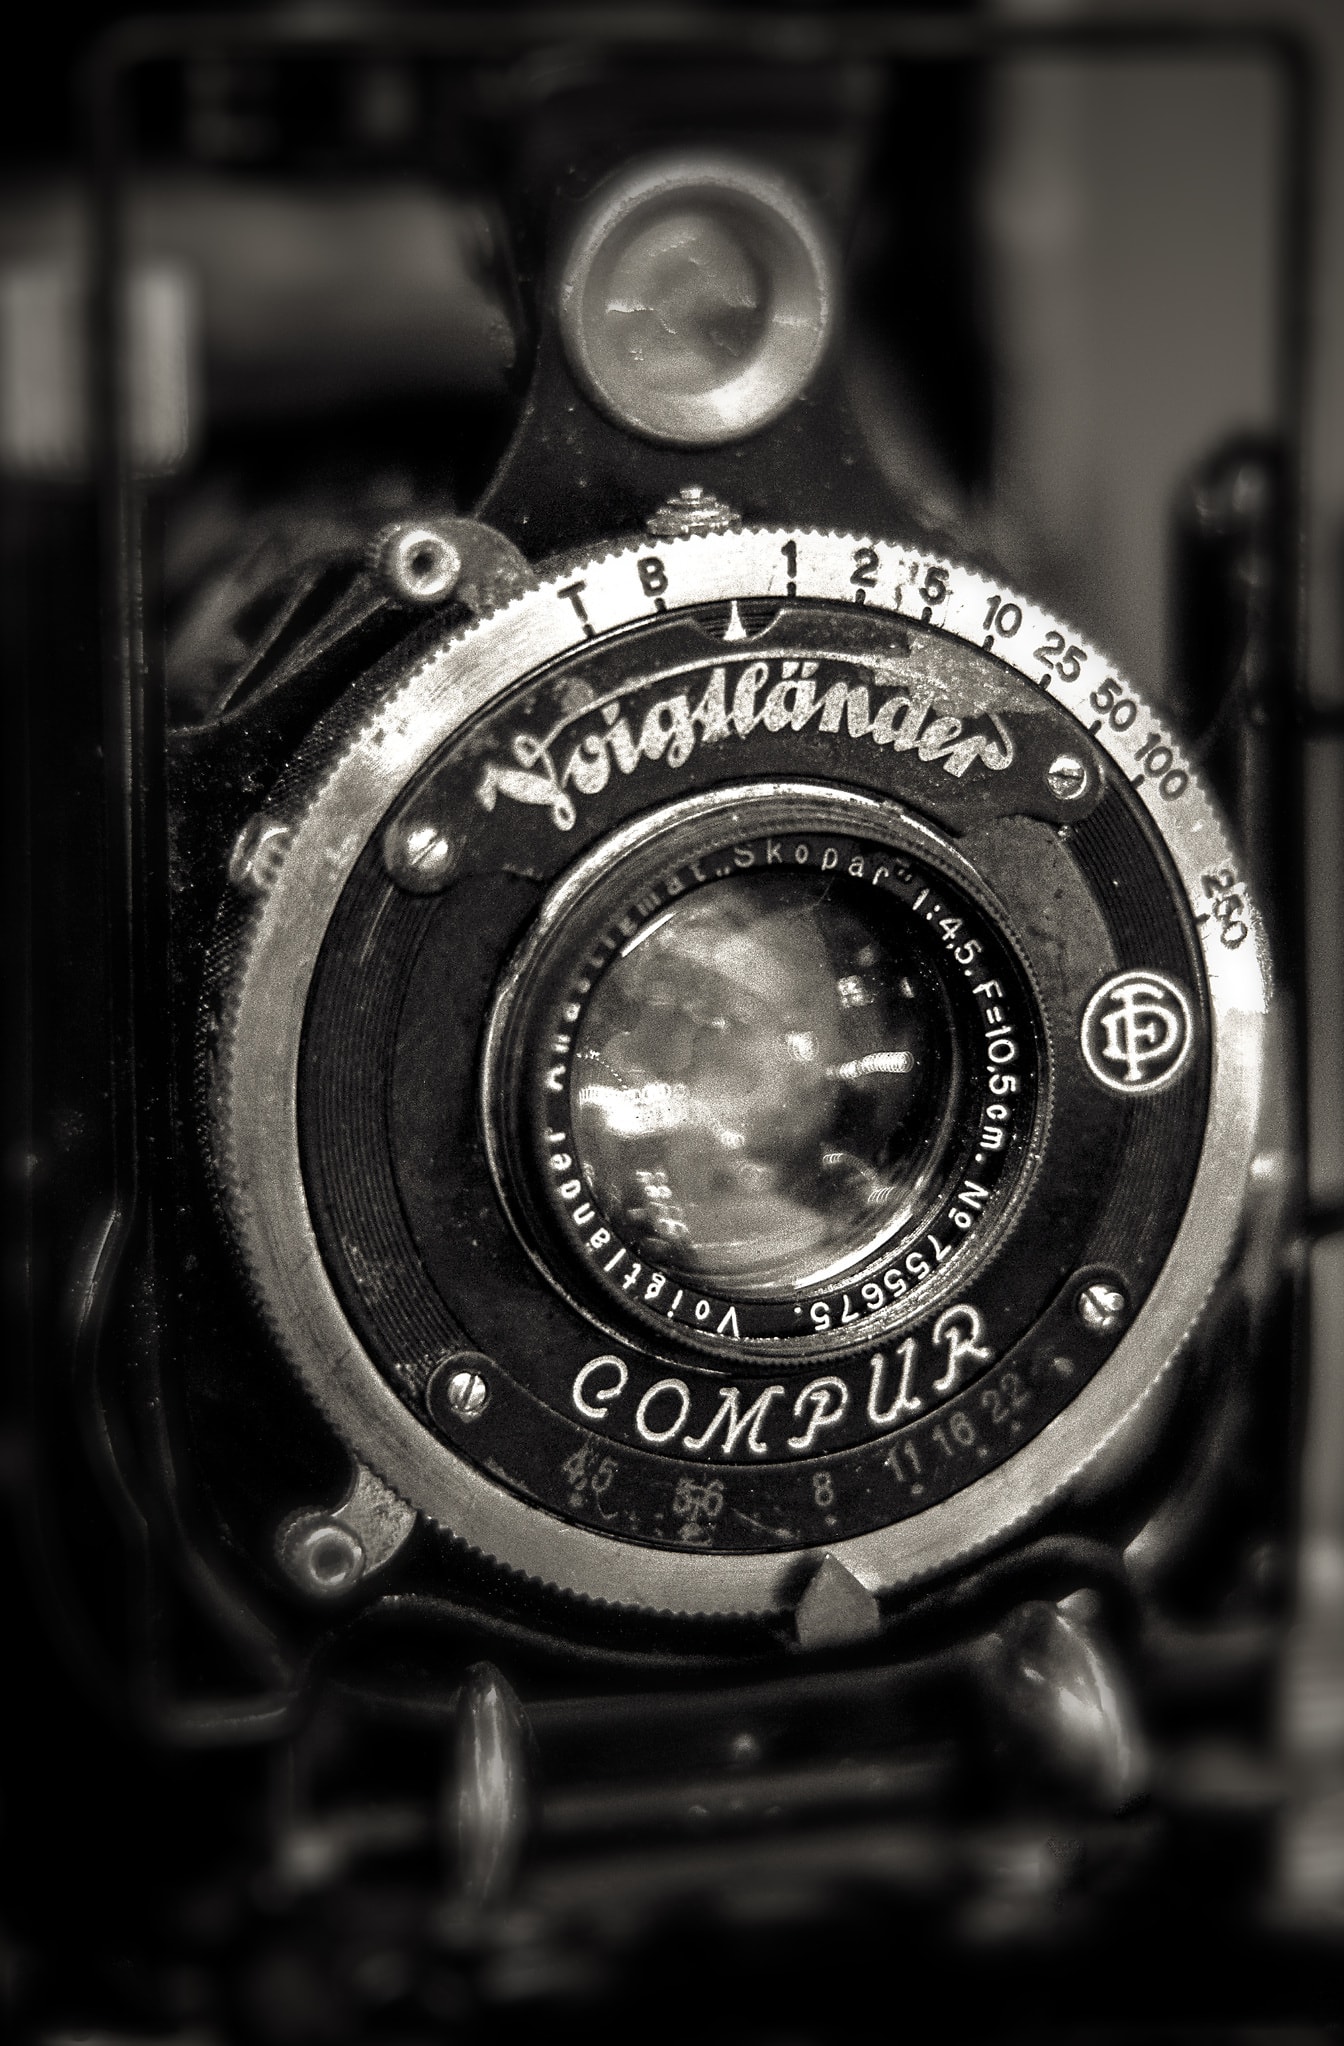 Voigtlander analogue photo camera close-up of lens monochrome